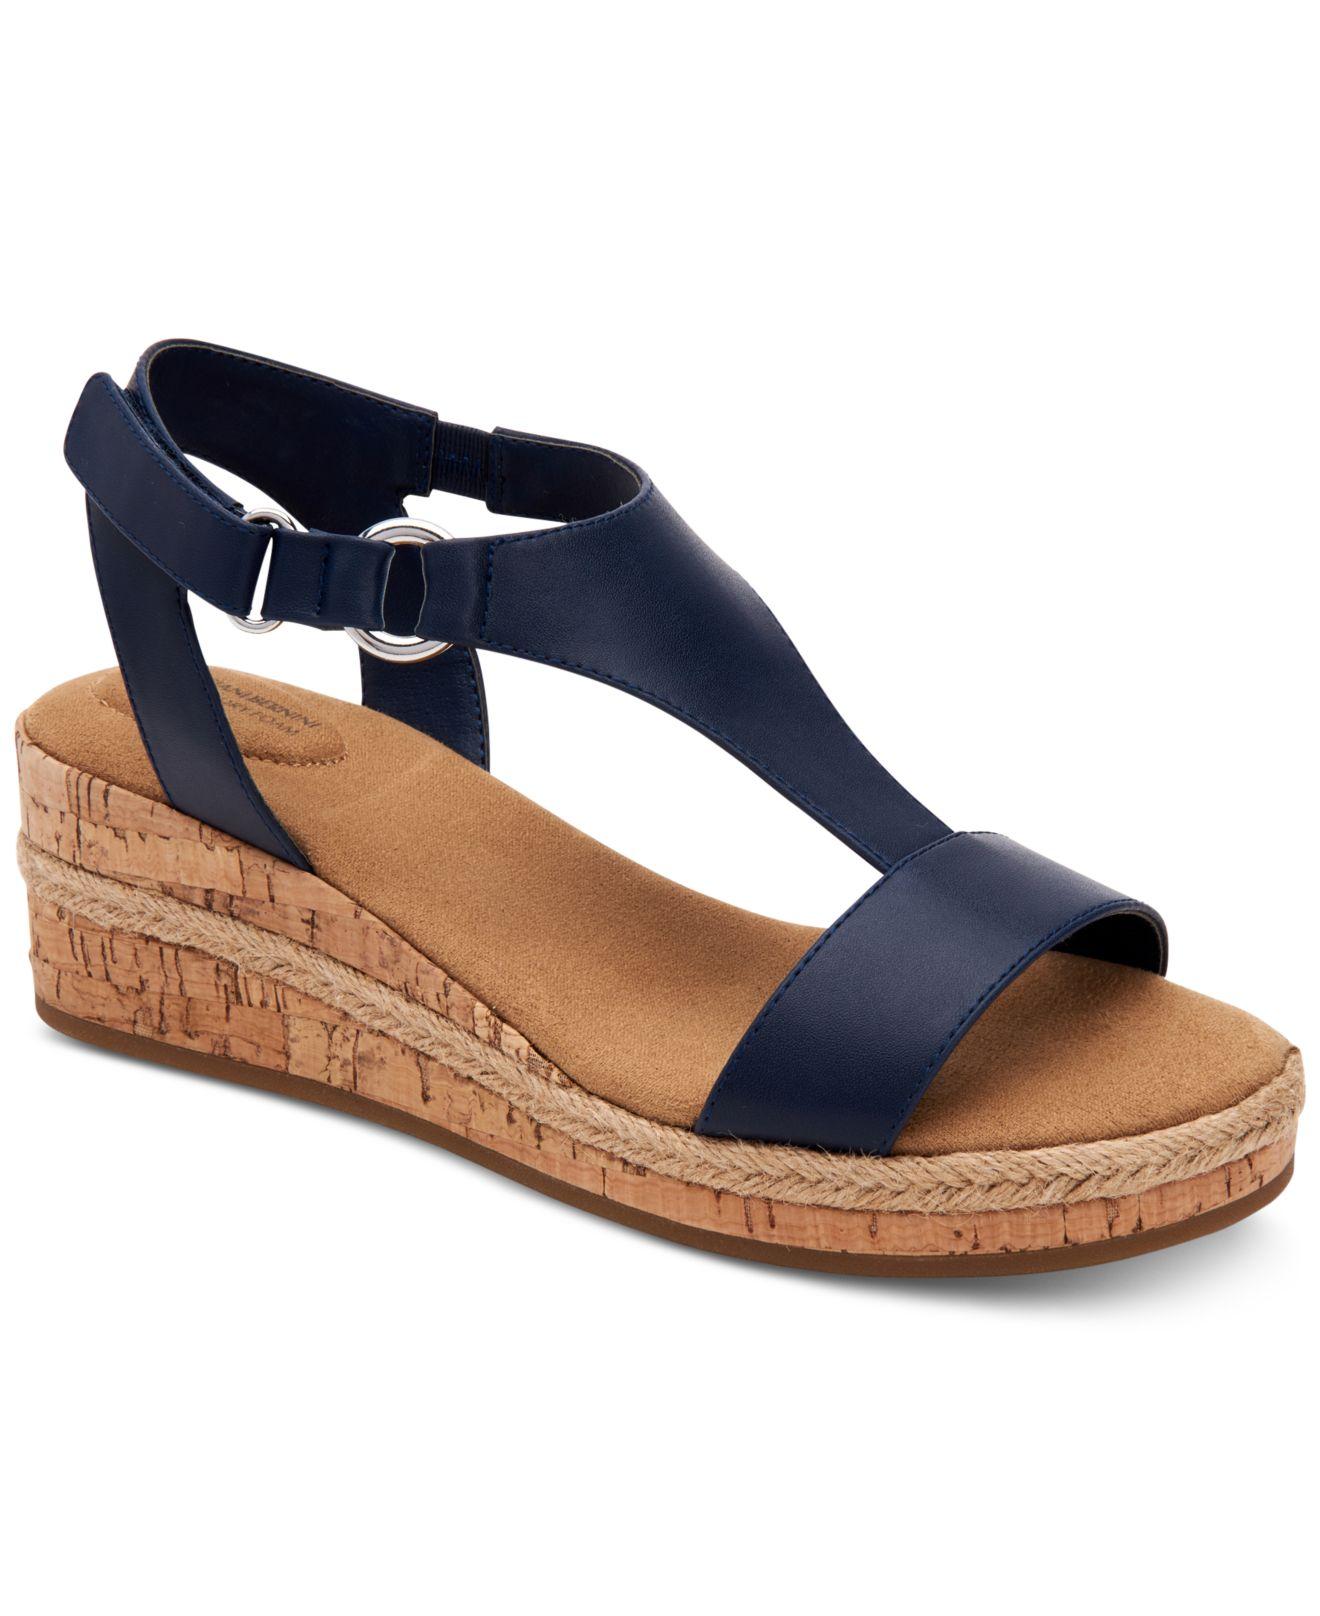 Giani Bernini Terrii Wedge Sandals, Created For Macy's in Blue - Lyst